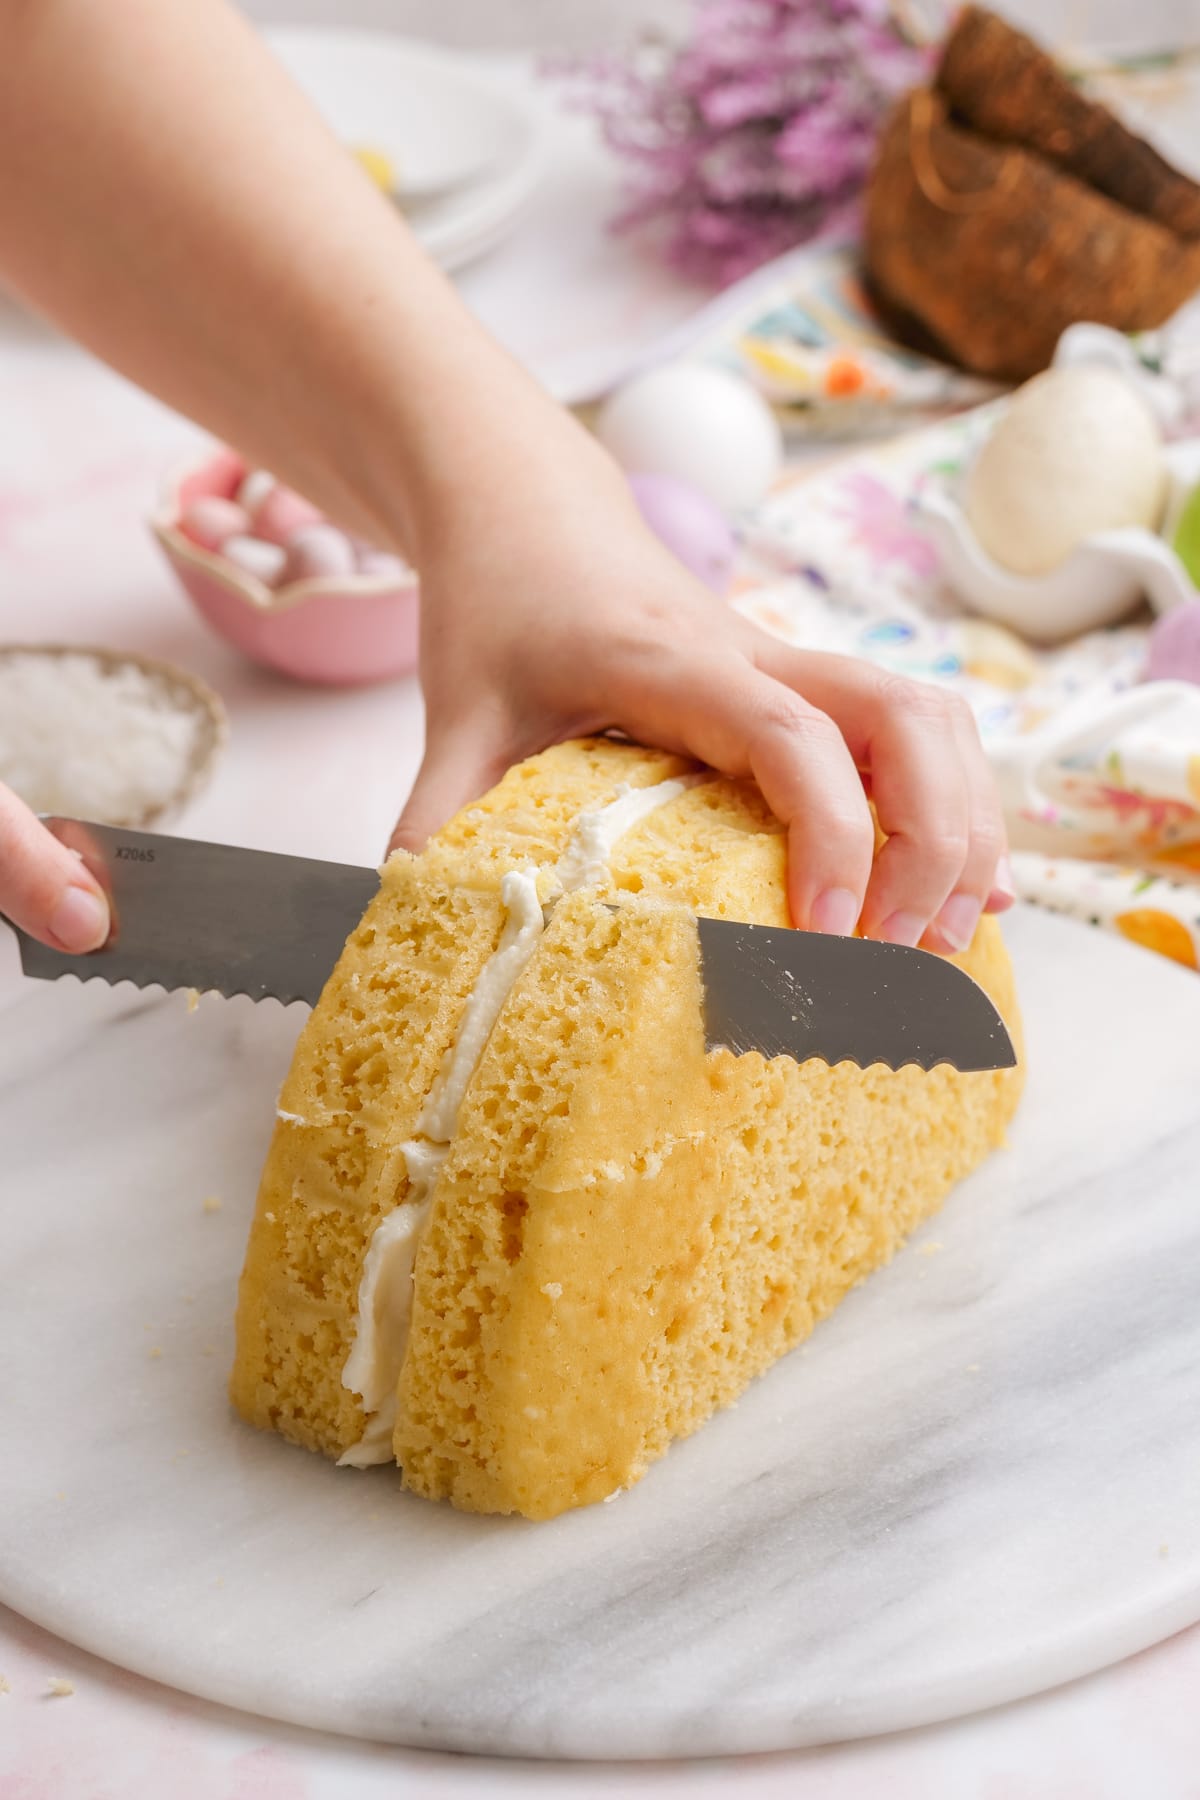 Knife cut cake